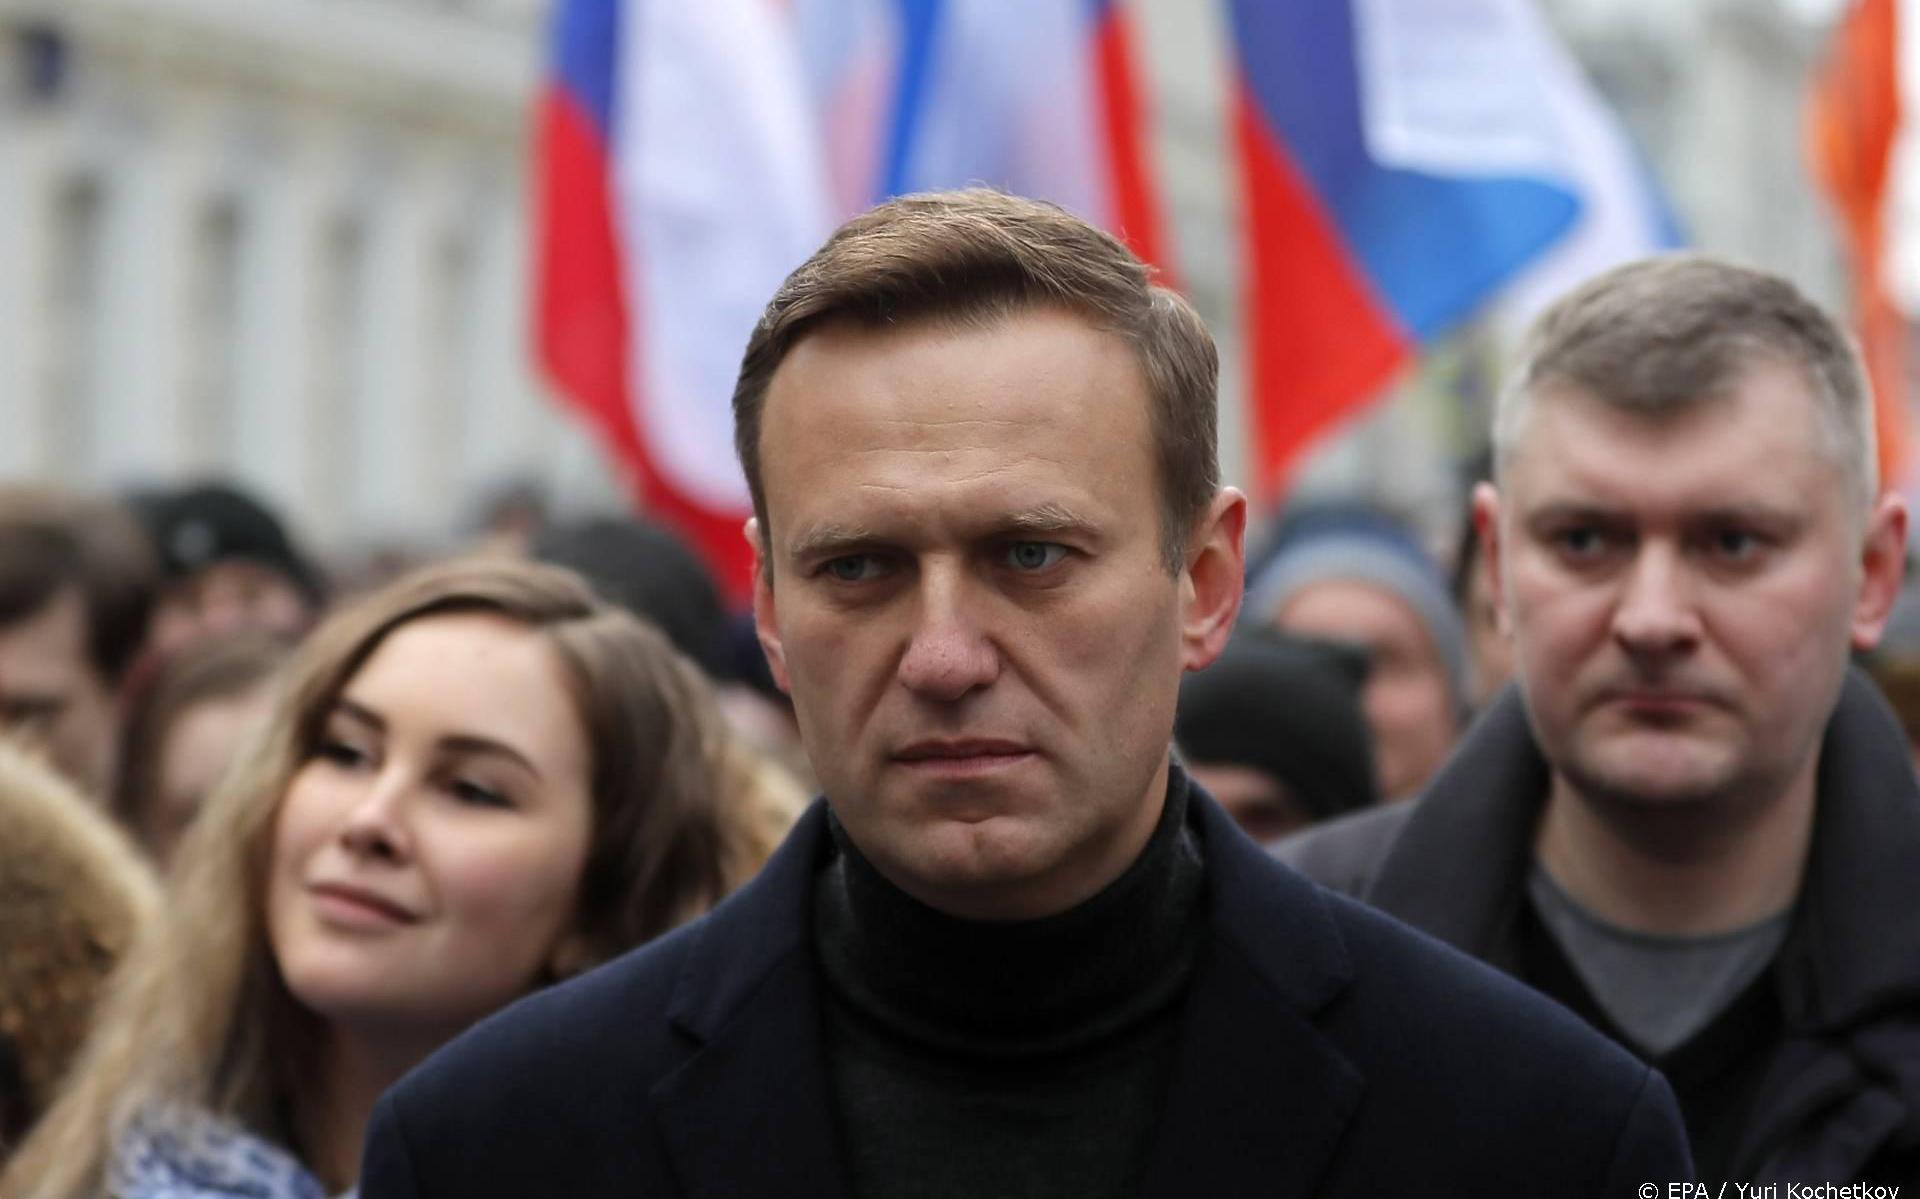 Kremlin: waterfles van Navalni had kunnen dienen als bewijs